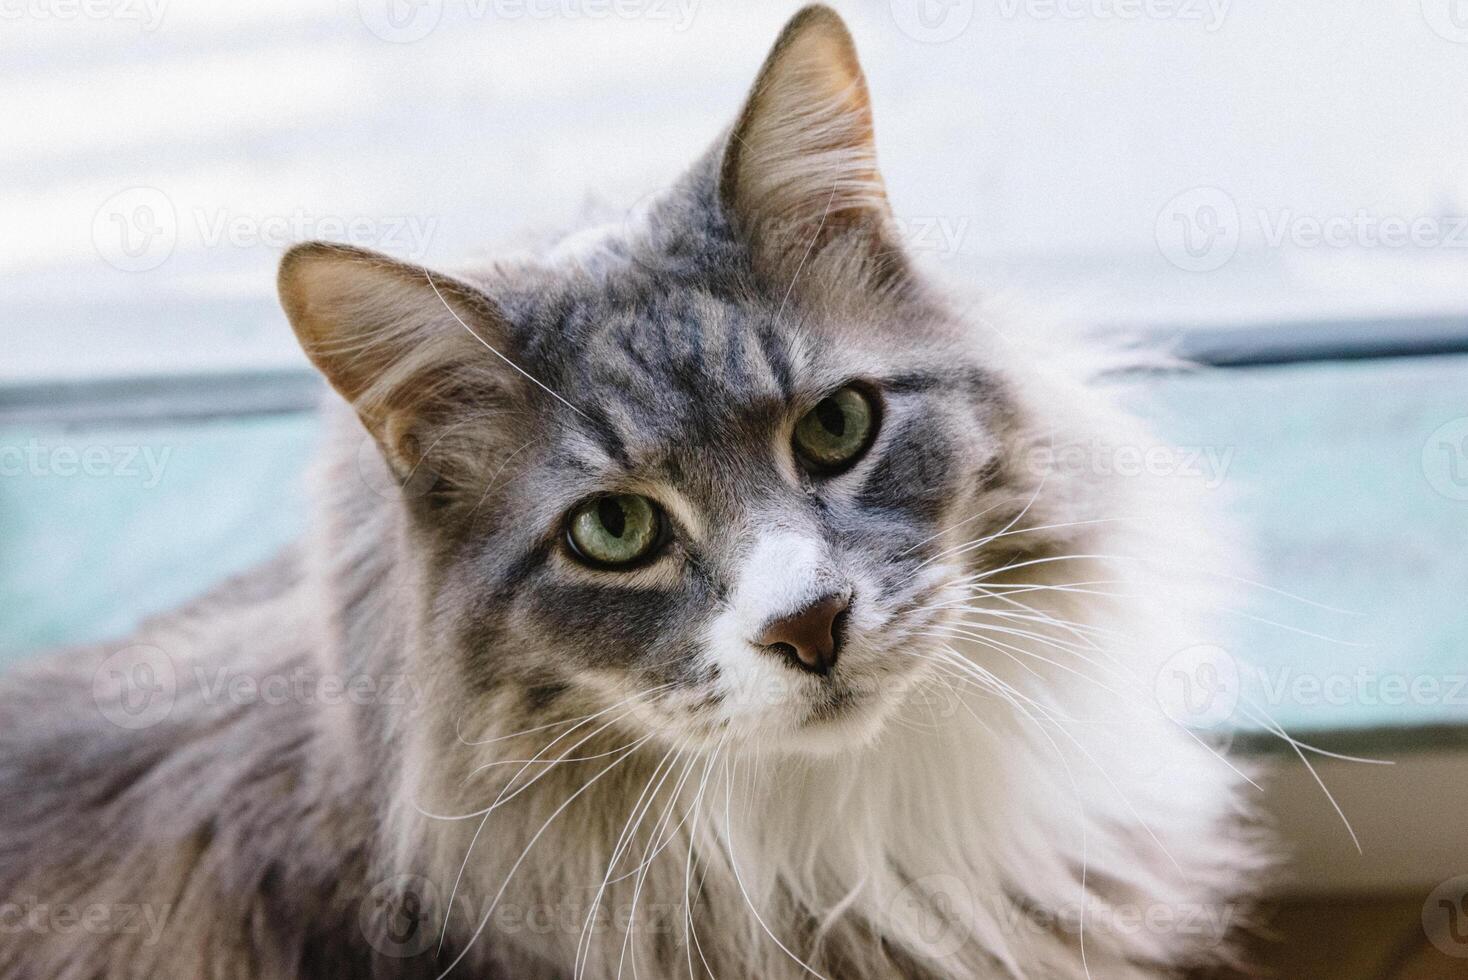 Maine Waschbär Katze mit Grün Augen und grau Pelz foto